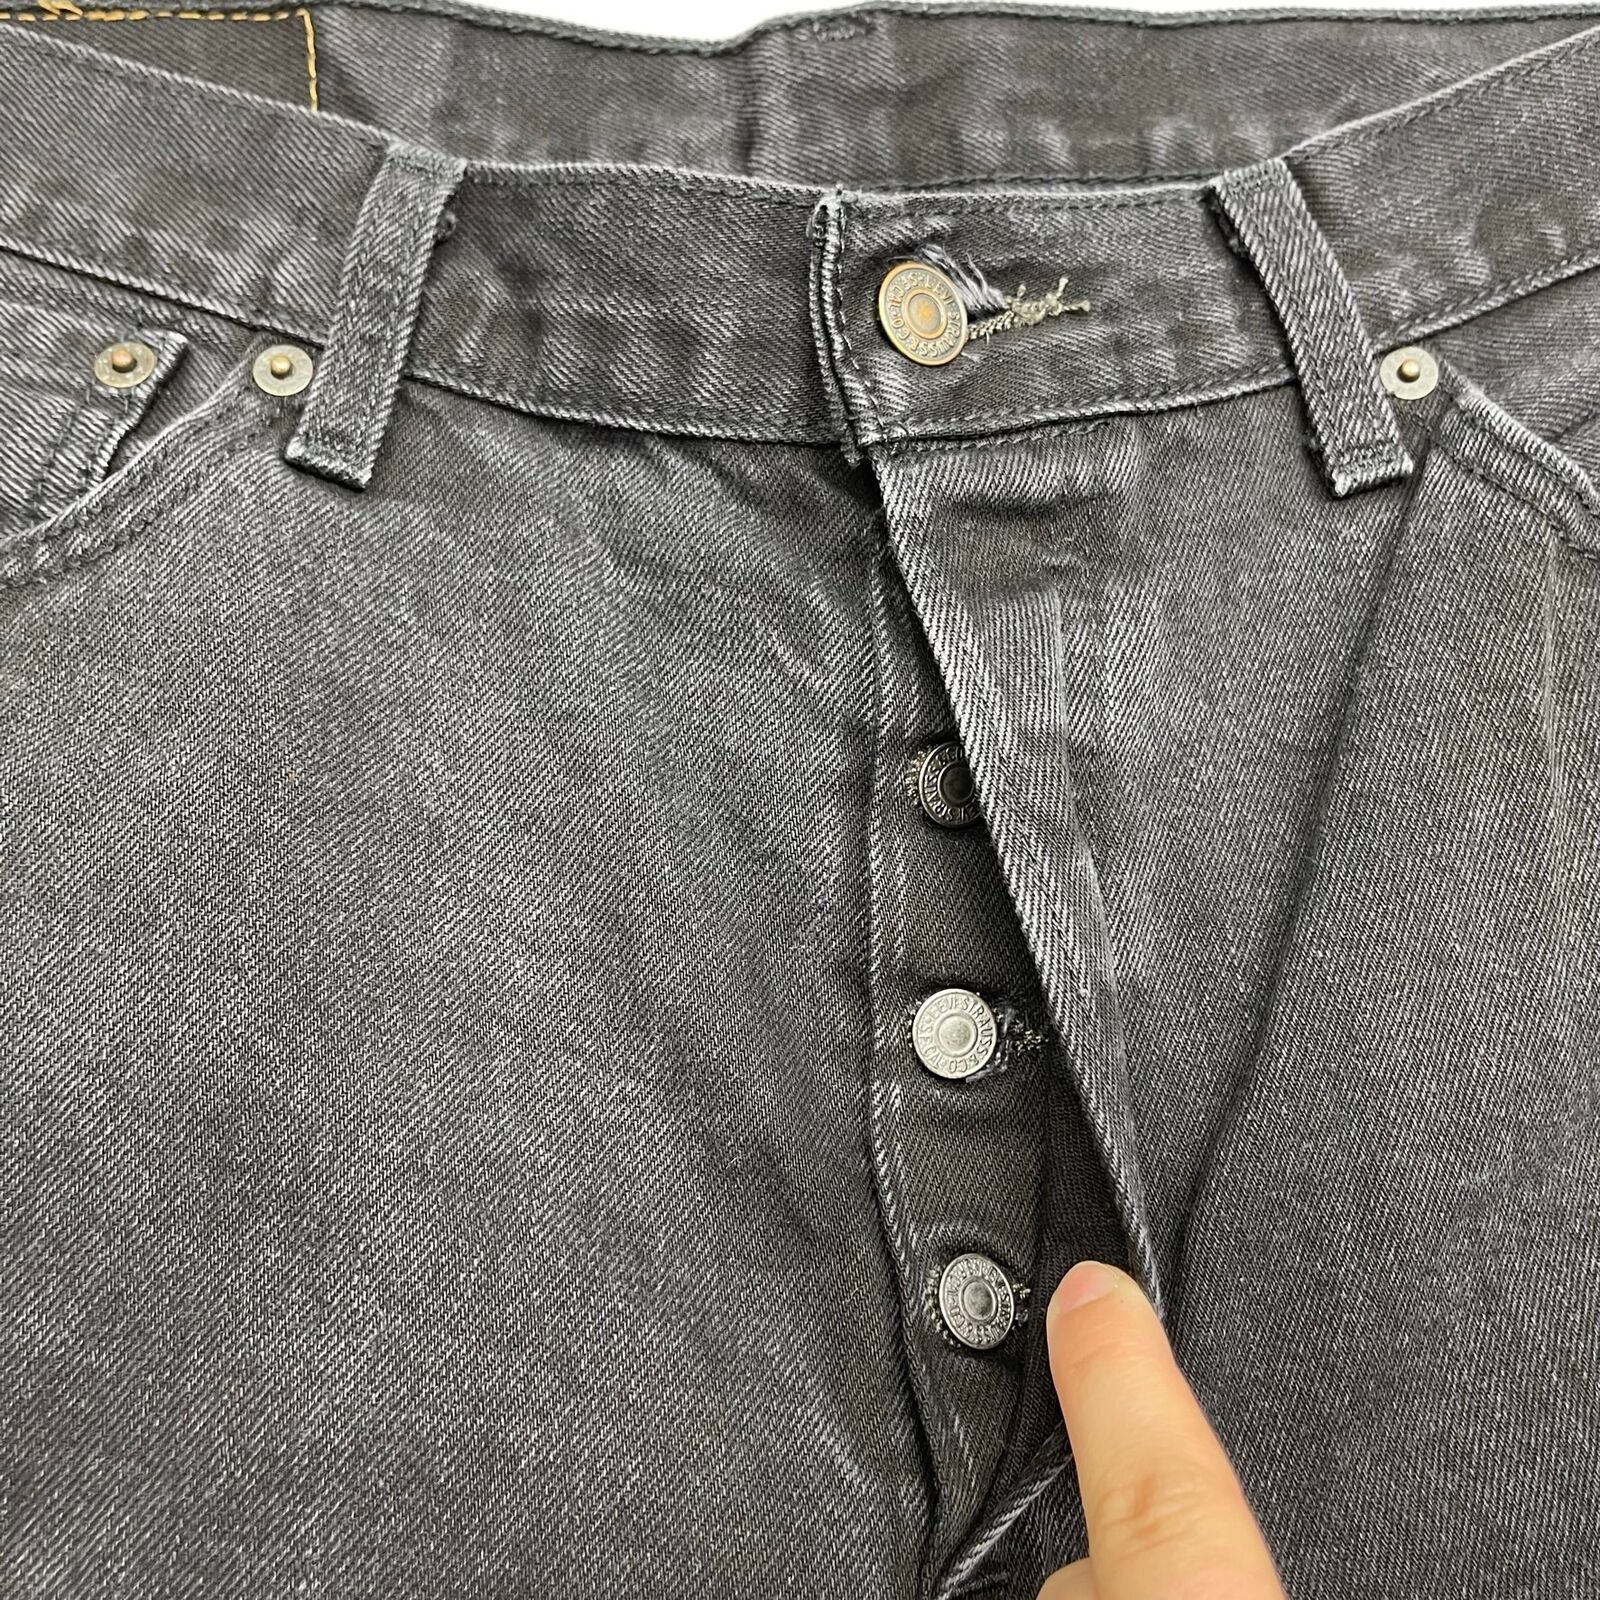 Flyselskaber slack strejke Levi's 501 Black Button Fly Straight Fit Denim Jeans Mens Size 36x30 -  beyond exchange